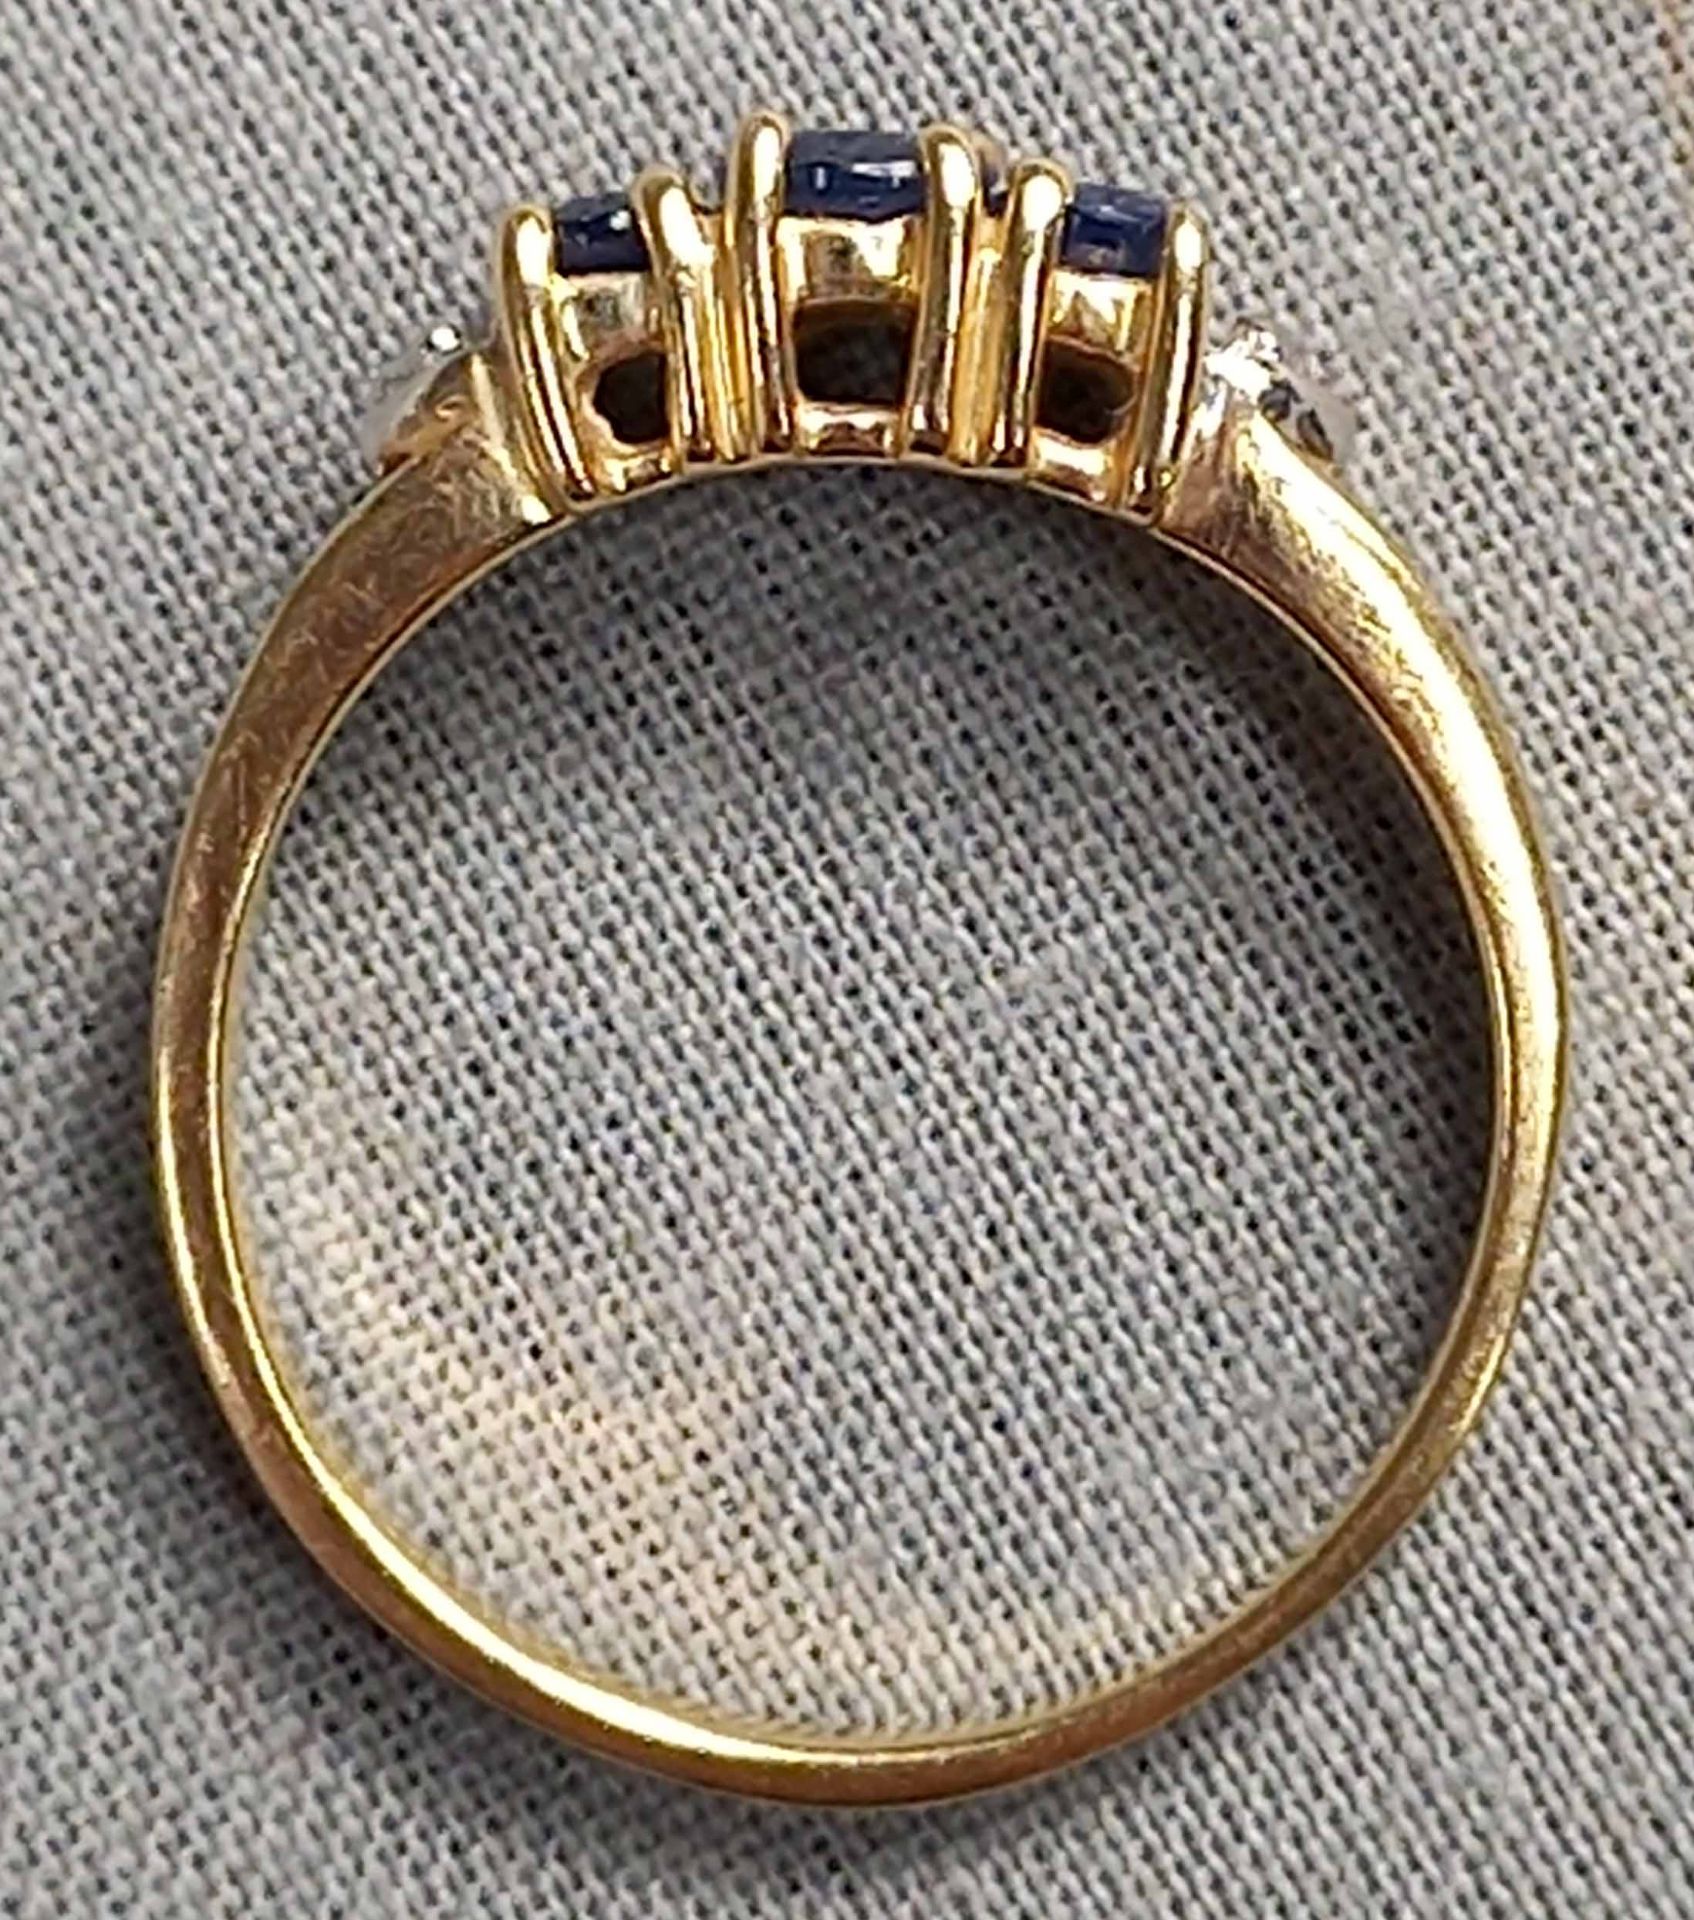 4 Ringe Gold 585 mit Steinen (Aquamarin, Rubin, Diamant, Saphir). - Bild 25 aus 29